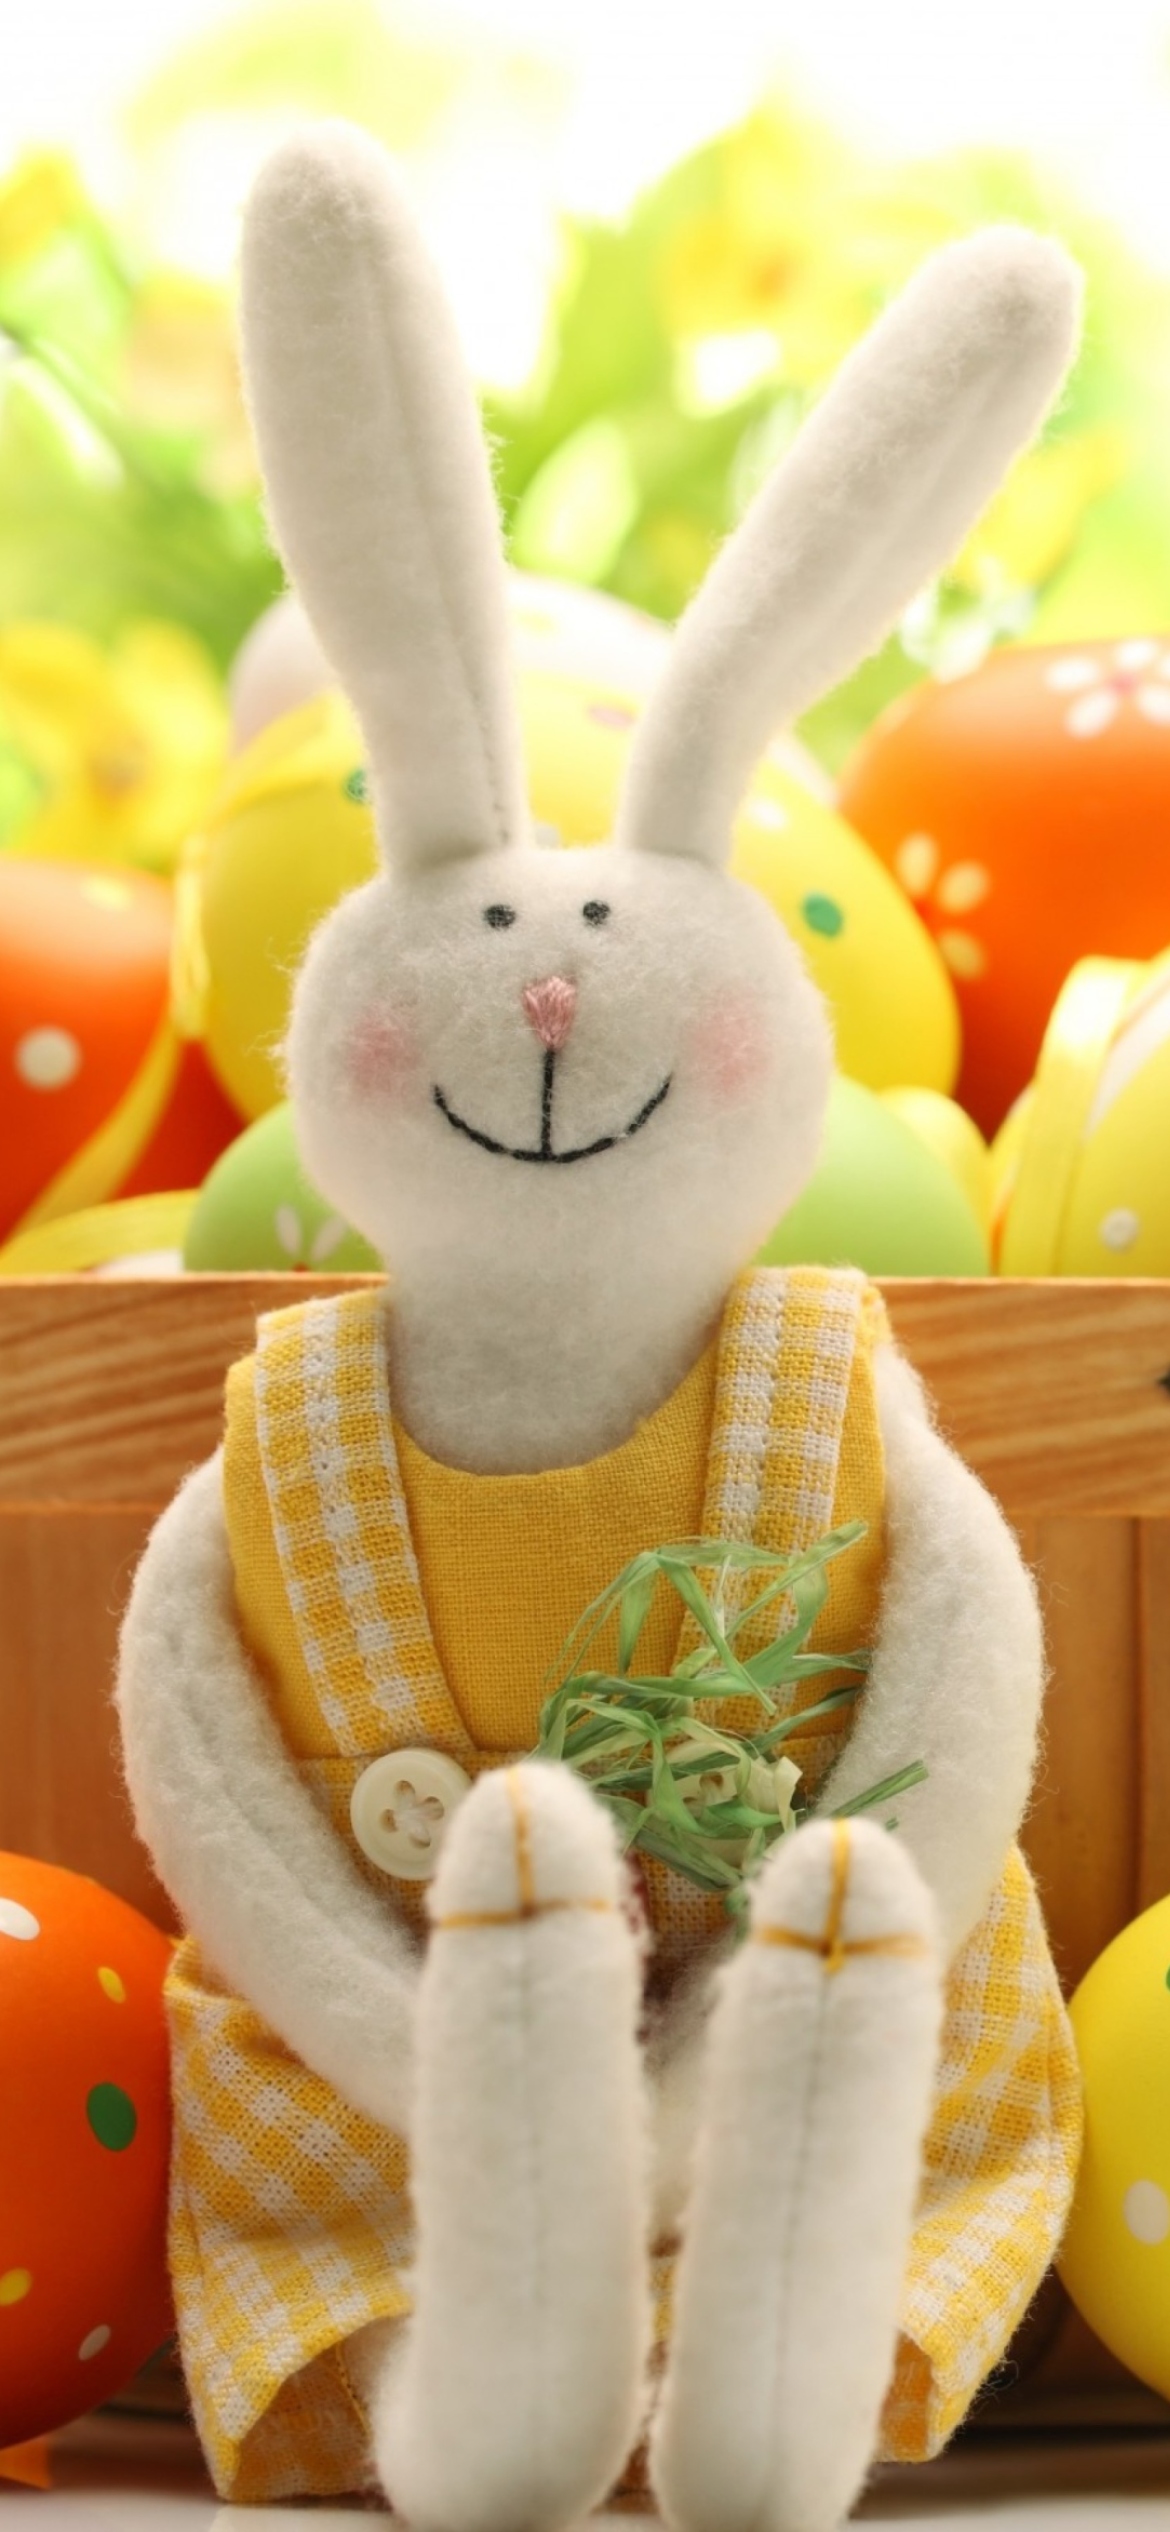 Das Cute Easter Bunny Wallpaper 1170x2532